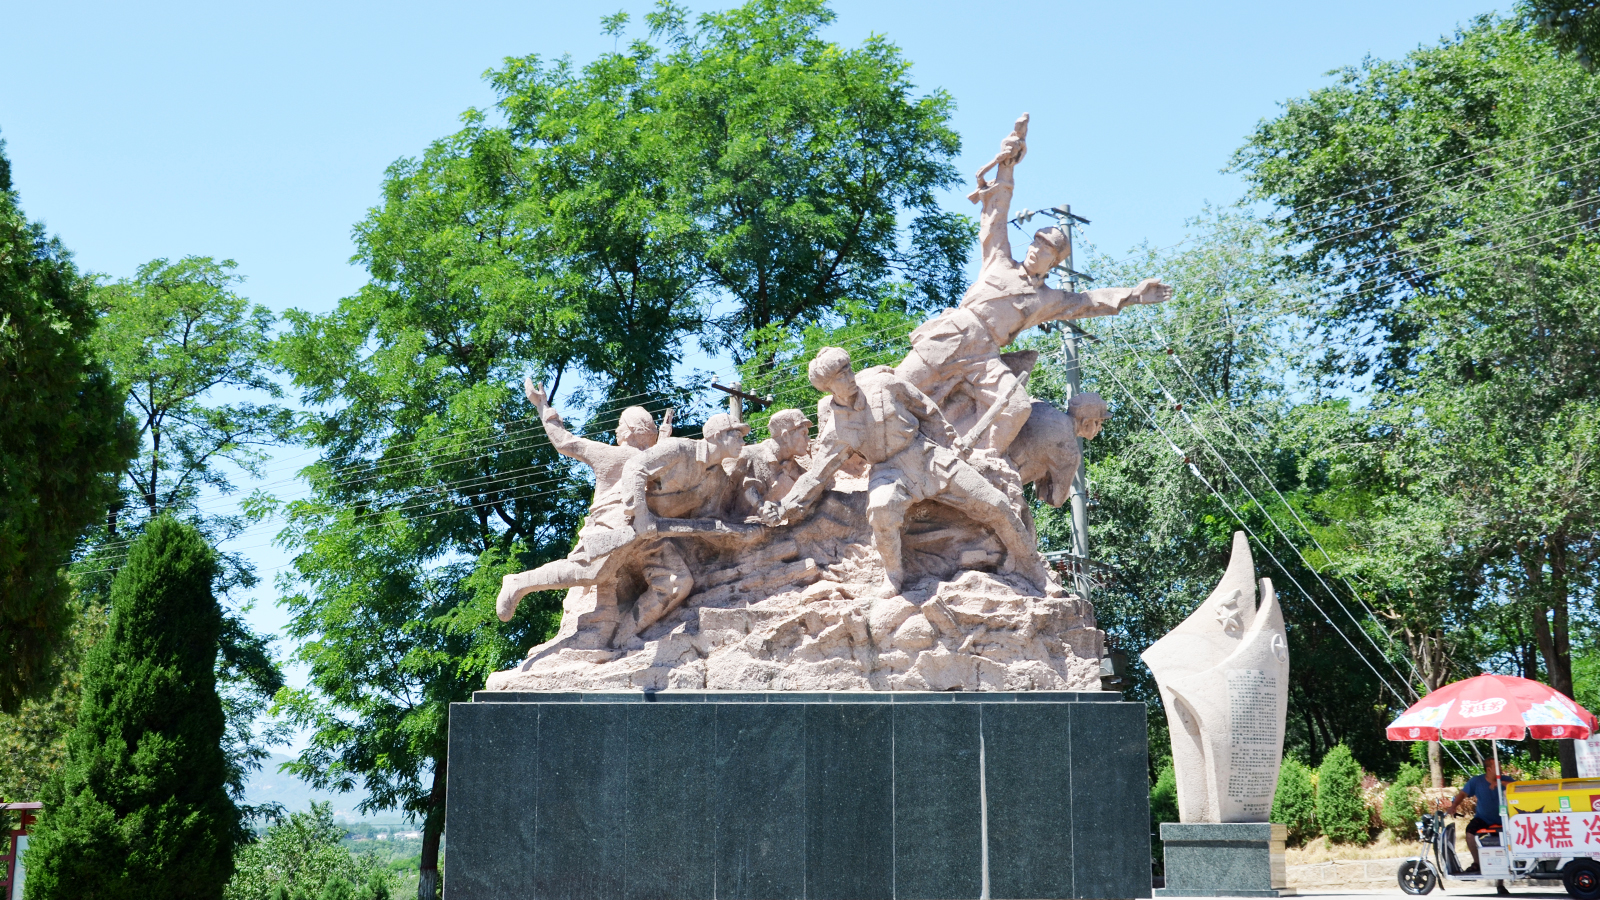 广场铜雕,军人主题雕像,铜雕制作加工